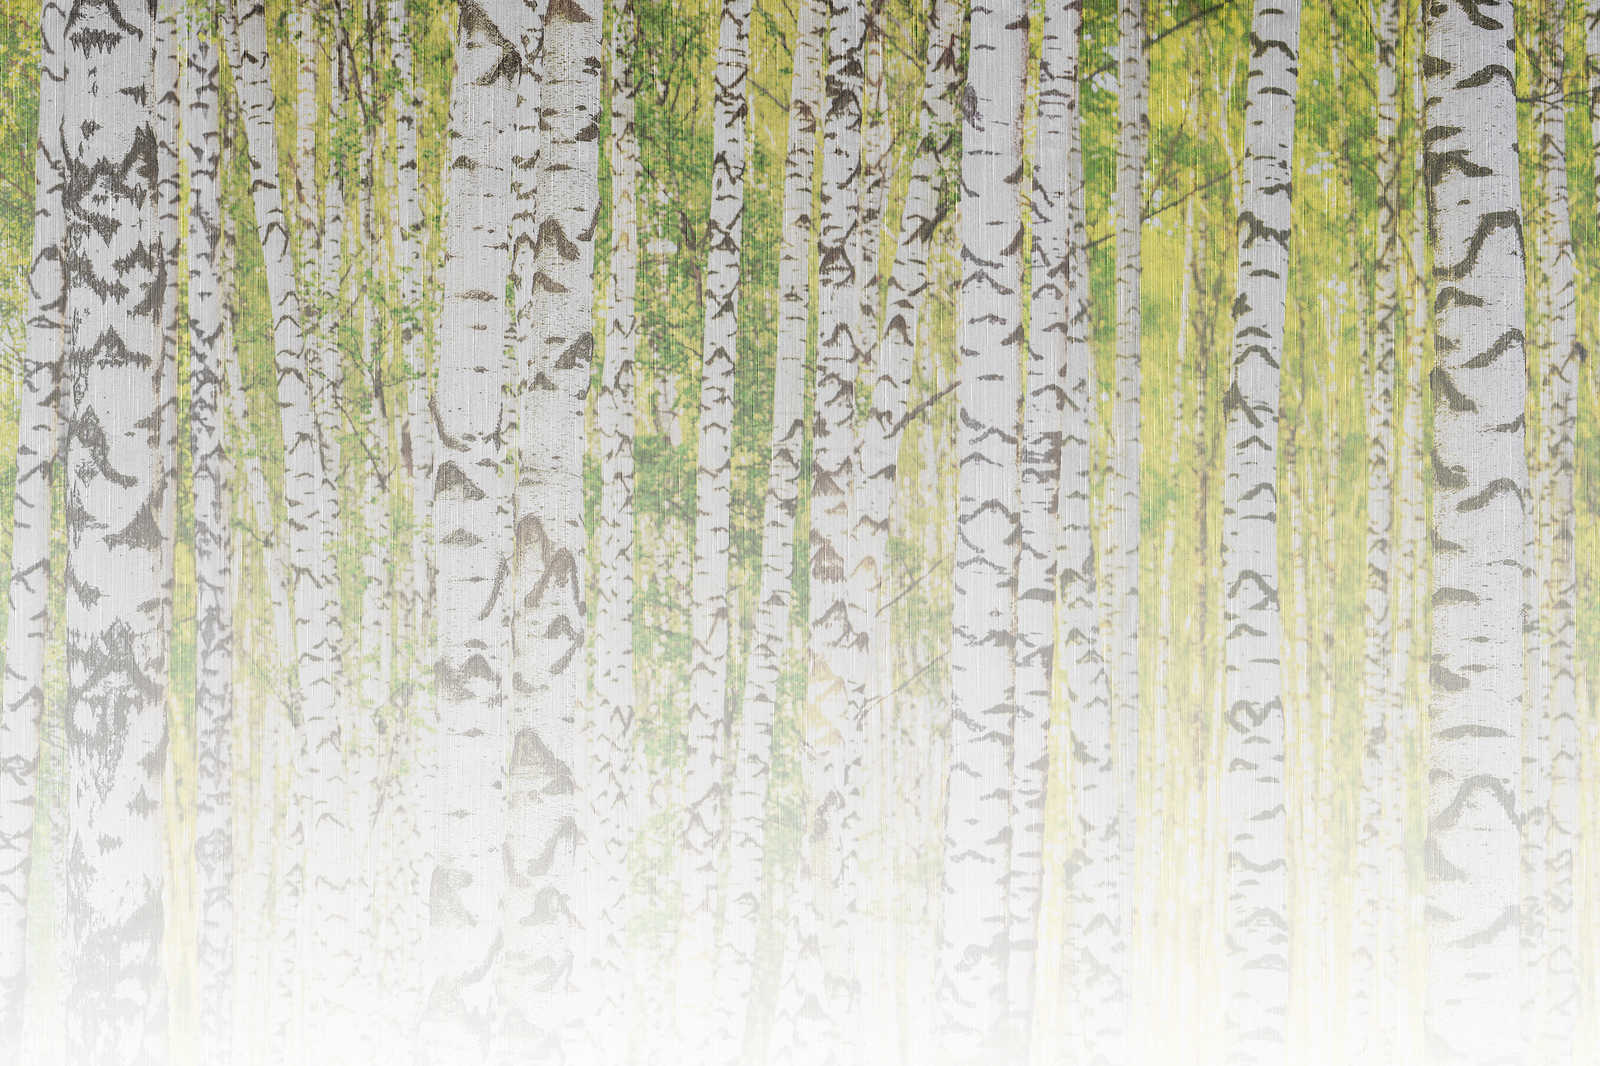             Cuadro en lienzo con bosque de abedules en aspecto de estructura de lino - 0,90 m x 0,60 m
        